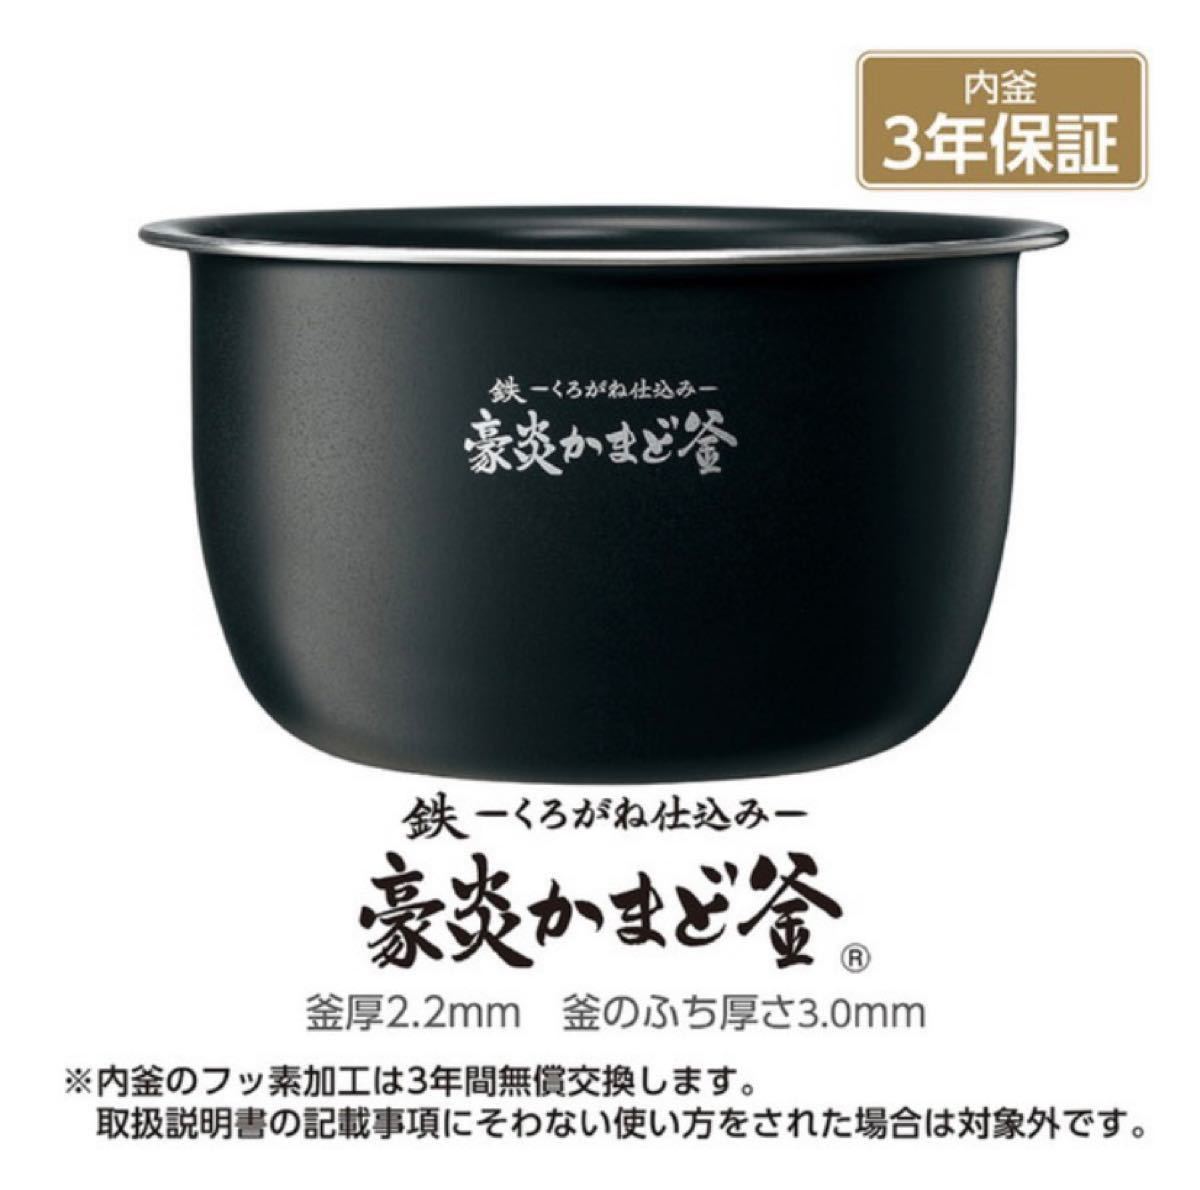 ZOJIRUSHI 象印 NW-JW10-BA 圧力IH炊飯ジャー 極め炊き 5.5合炊き 